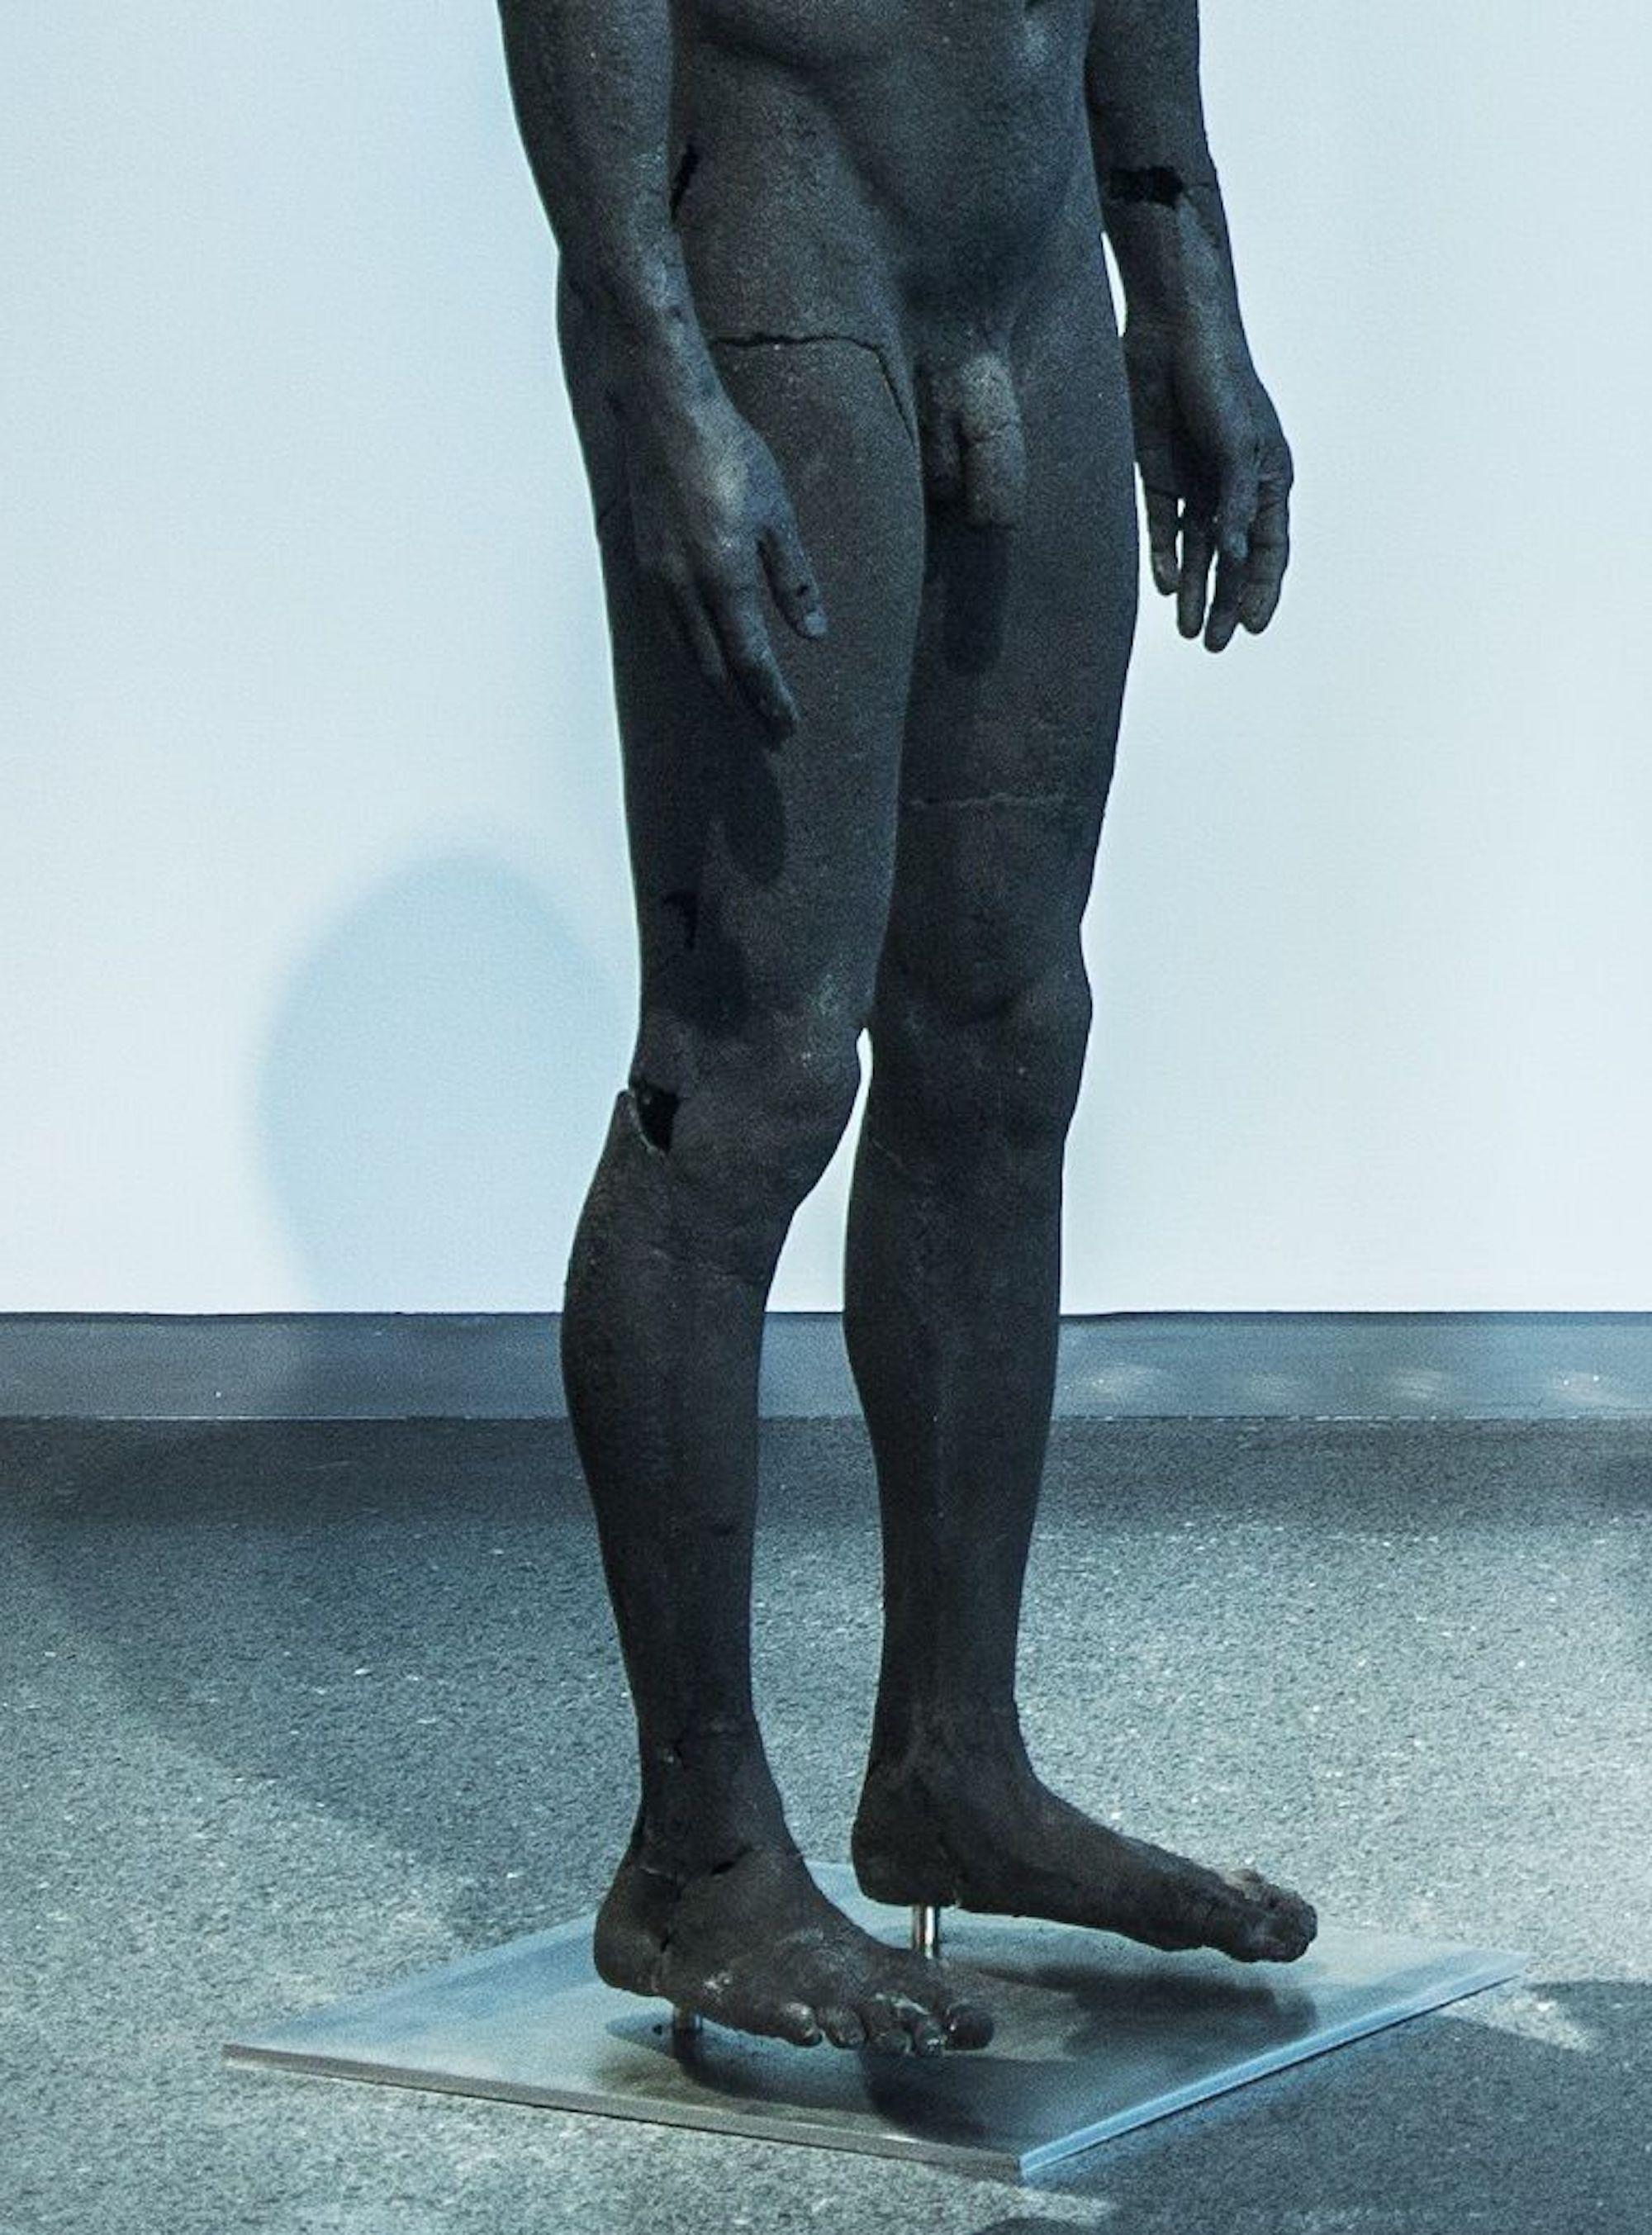 The Presence of Absence - Männlich (I) von Tom Price - Kohleskulptur, nackter Körper im Angebot 4